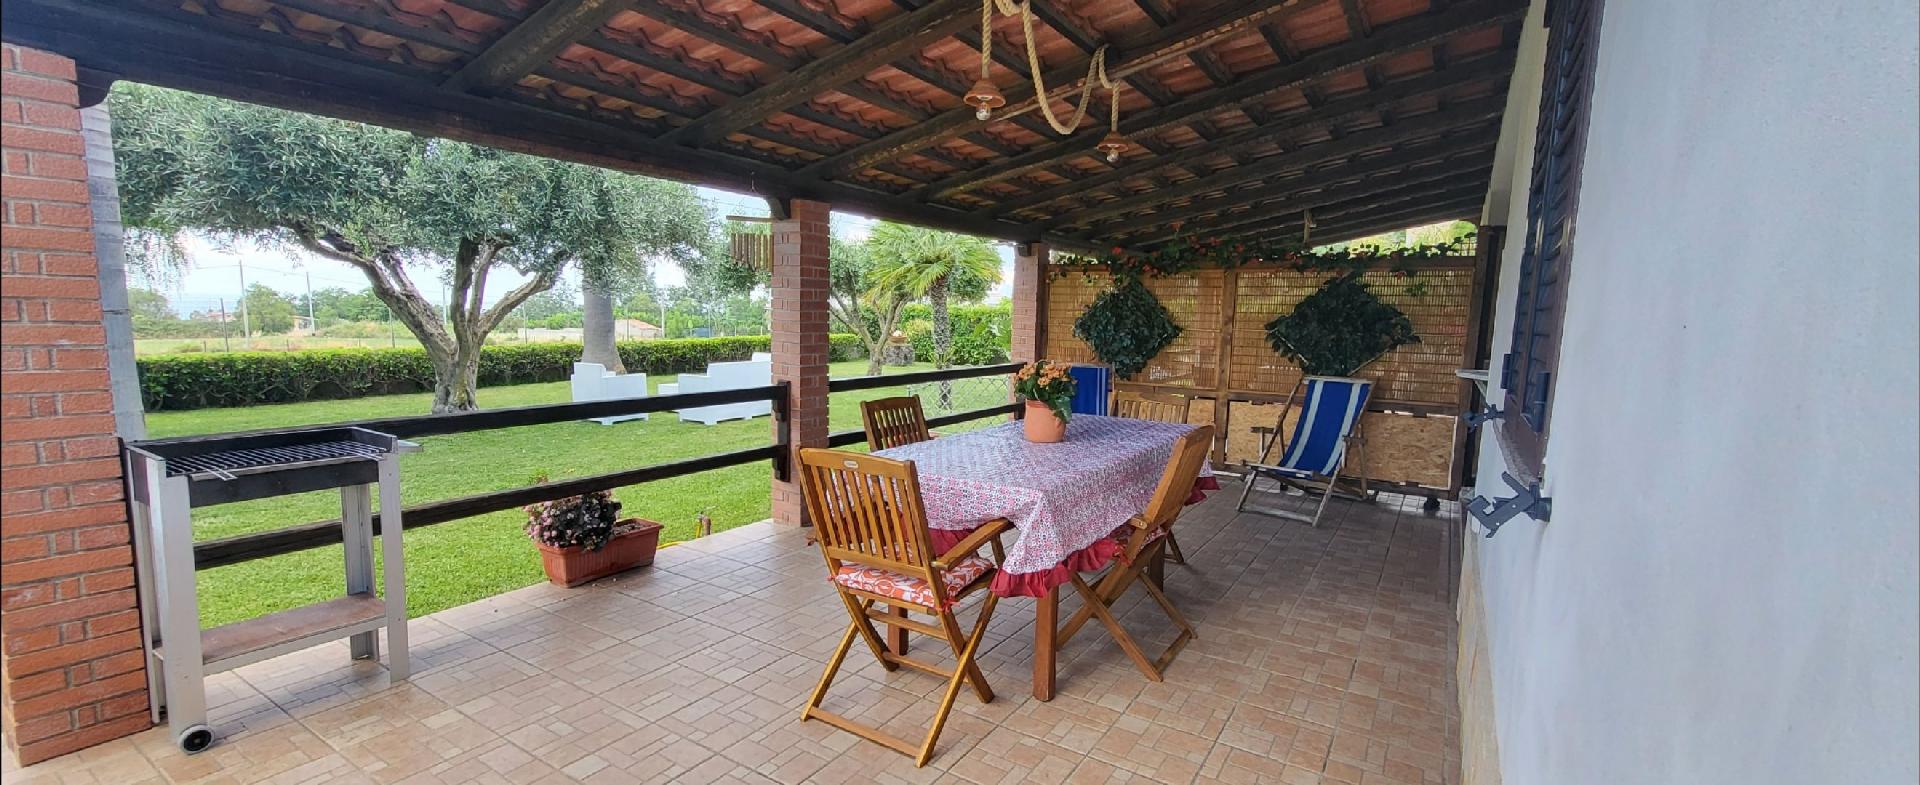 Ferienwohnung für 5 Personen ca. 55 m² i Ferienhaus in Italien